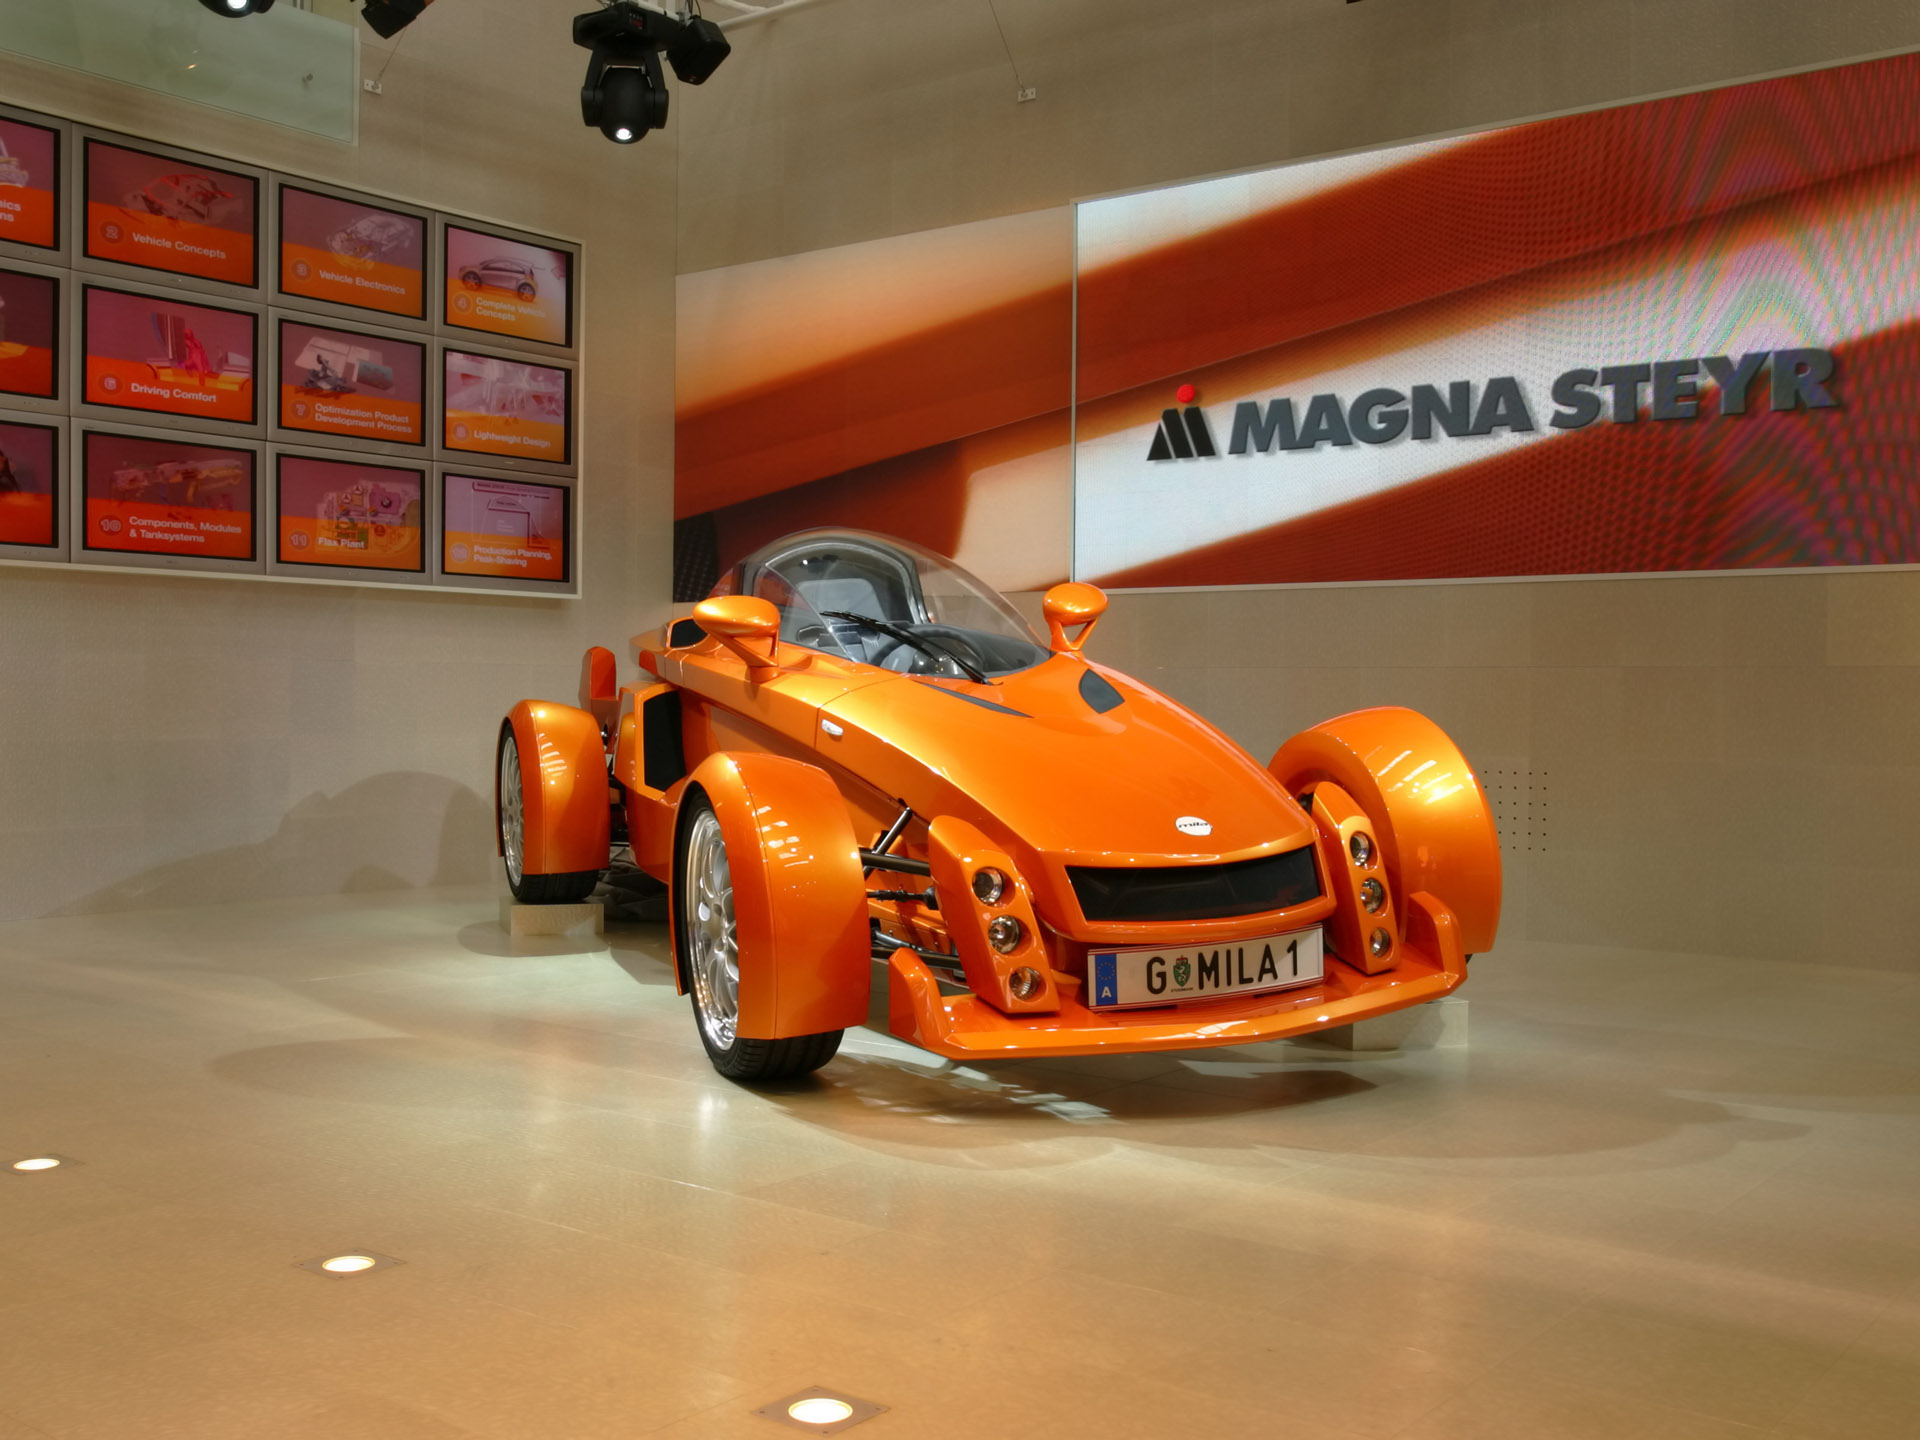 2005, Magna, Steyr, Mila, Concept, Supercar Wallpaper